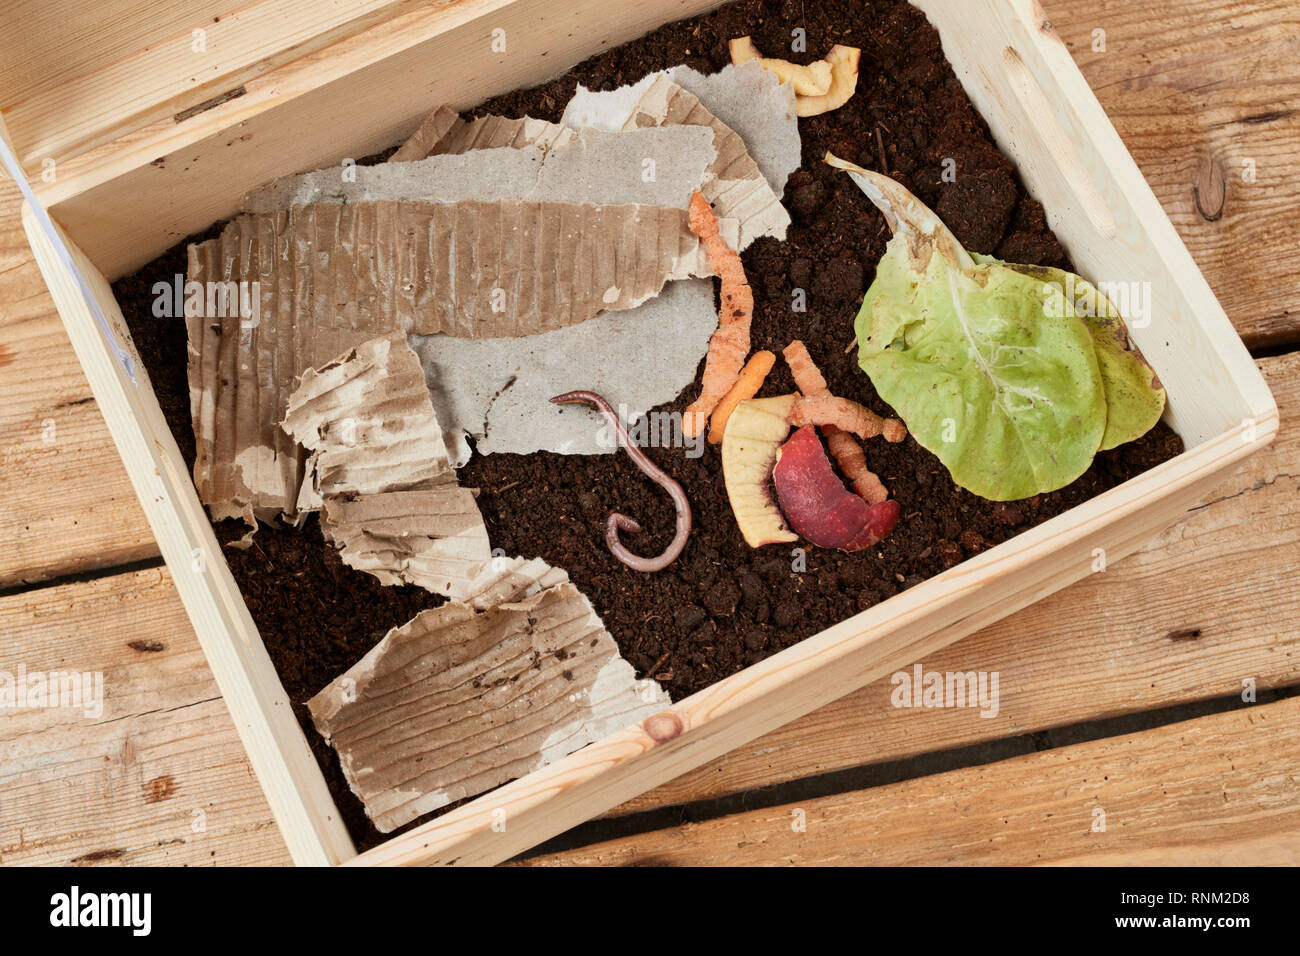 Eine Kiste für die Zucht von Roten wigglers, gefüllt mit Kompost, Obst und Gemüse Abfälle und Karton Stockfoto